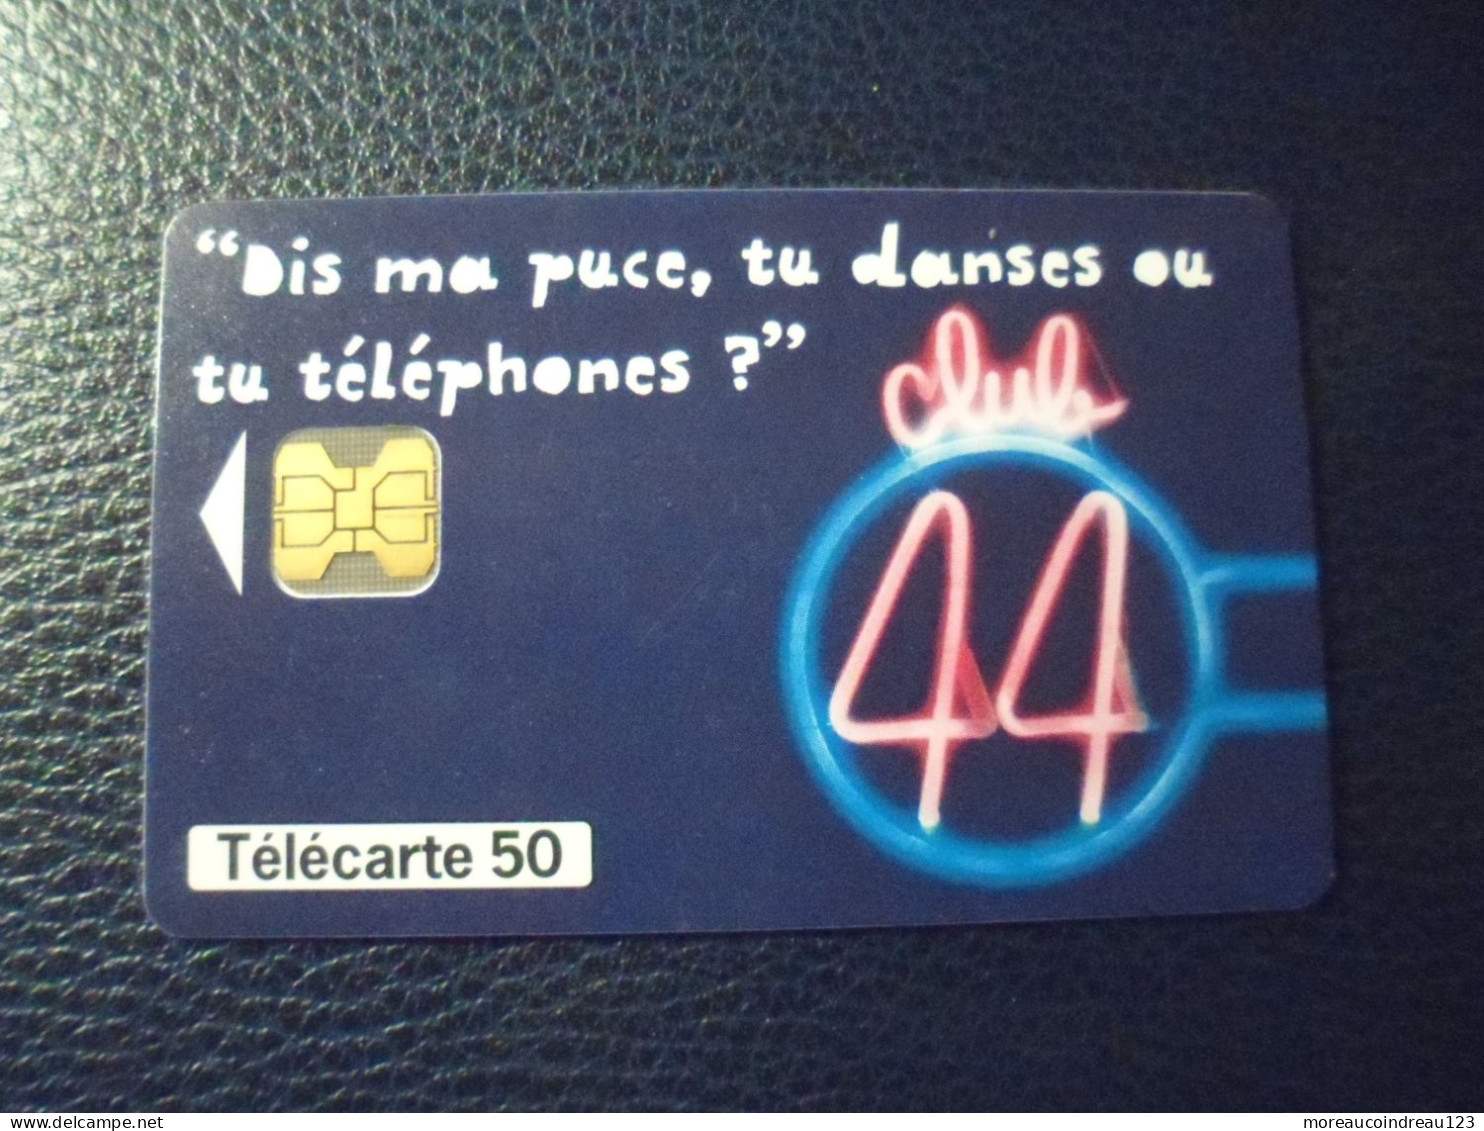 Télécarte Loto "Club 44" - Jeux